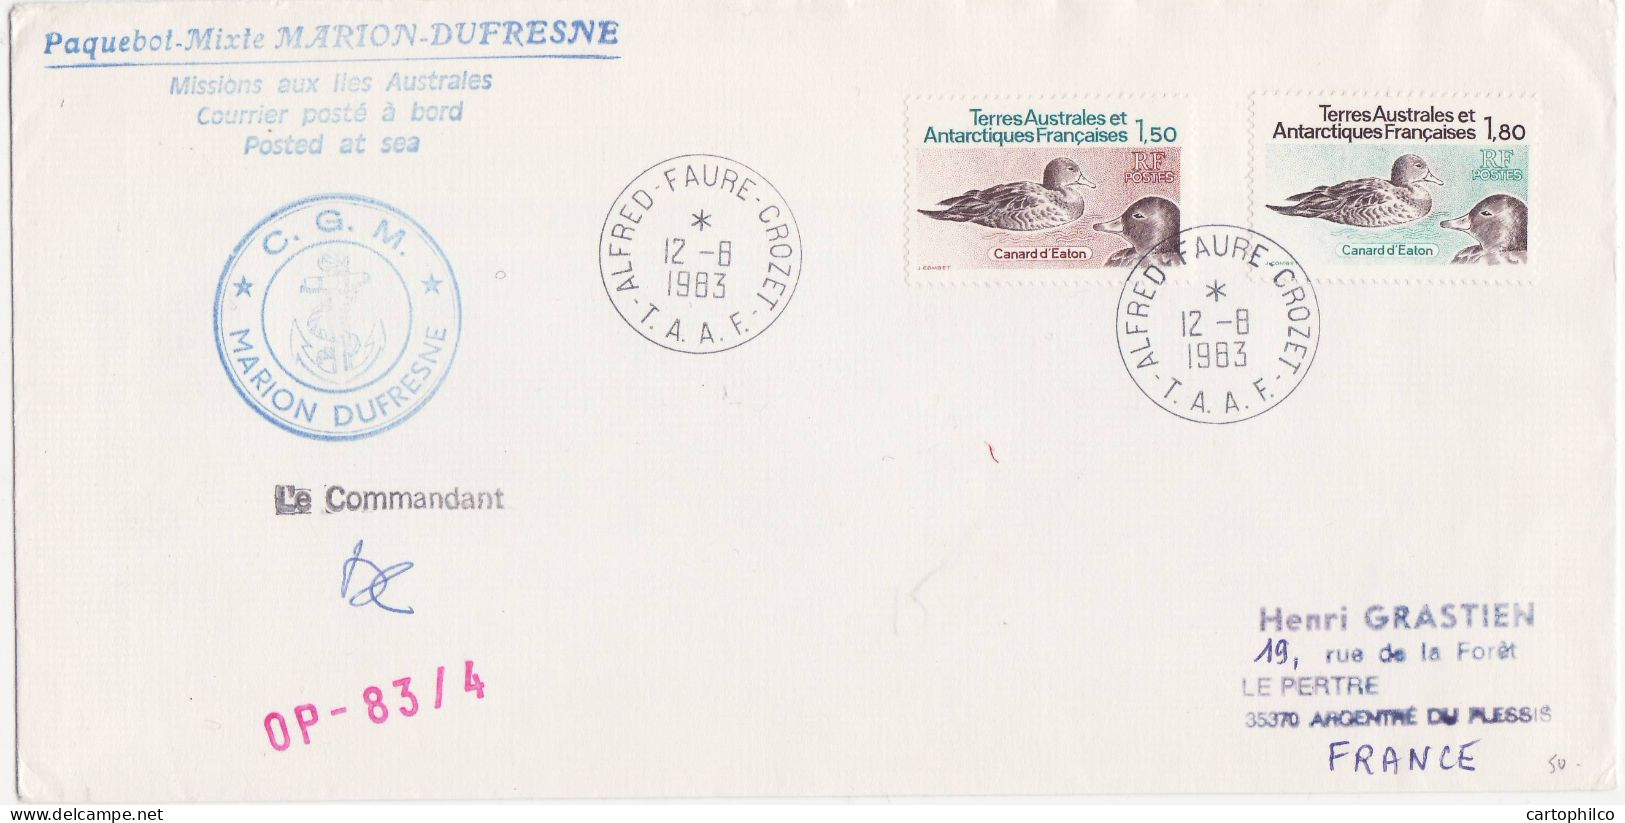 TAAF Lettre Marion Dufresne Alfred Faure Crozet 12 8 1983 Canard Pour Argentre Du Plessis - Lettres & Documents